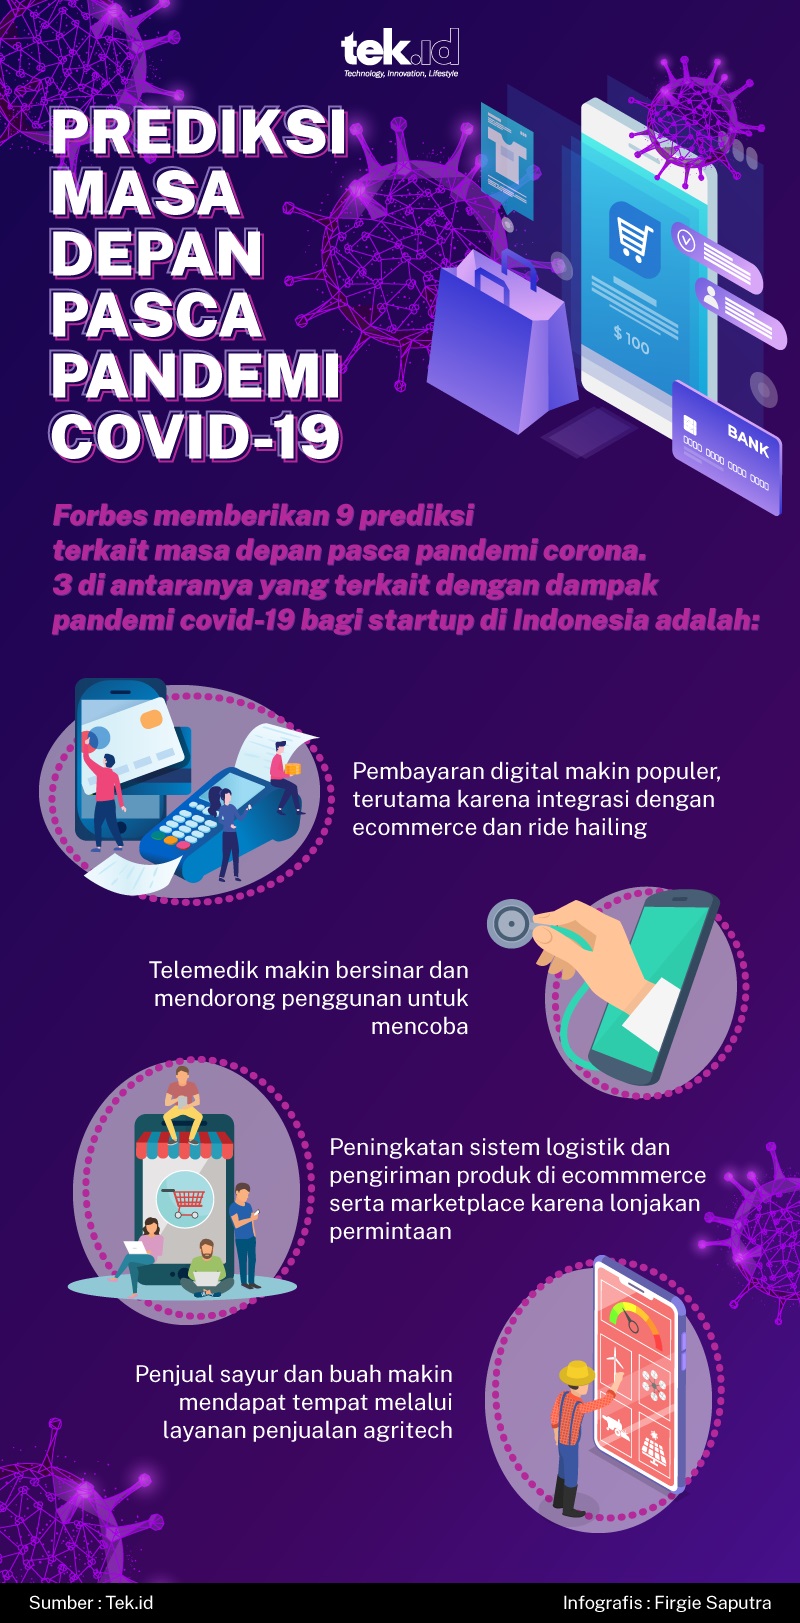 Dampak pandemi corona bagi startup di Indonesia